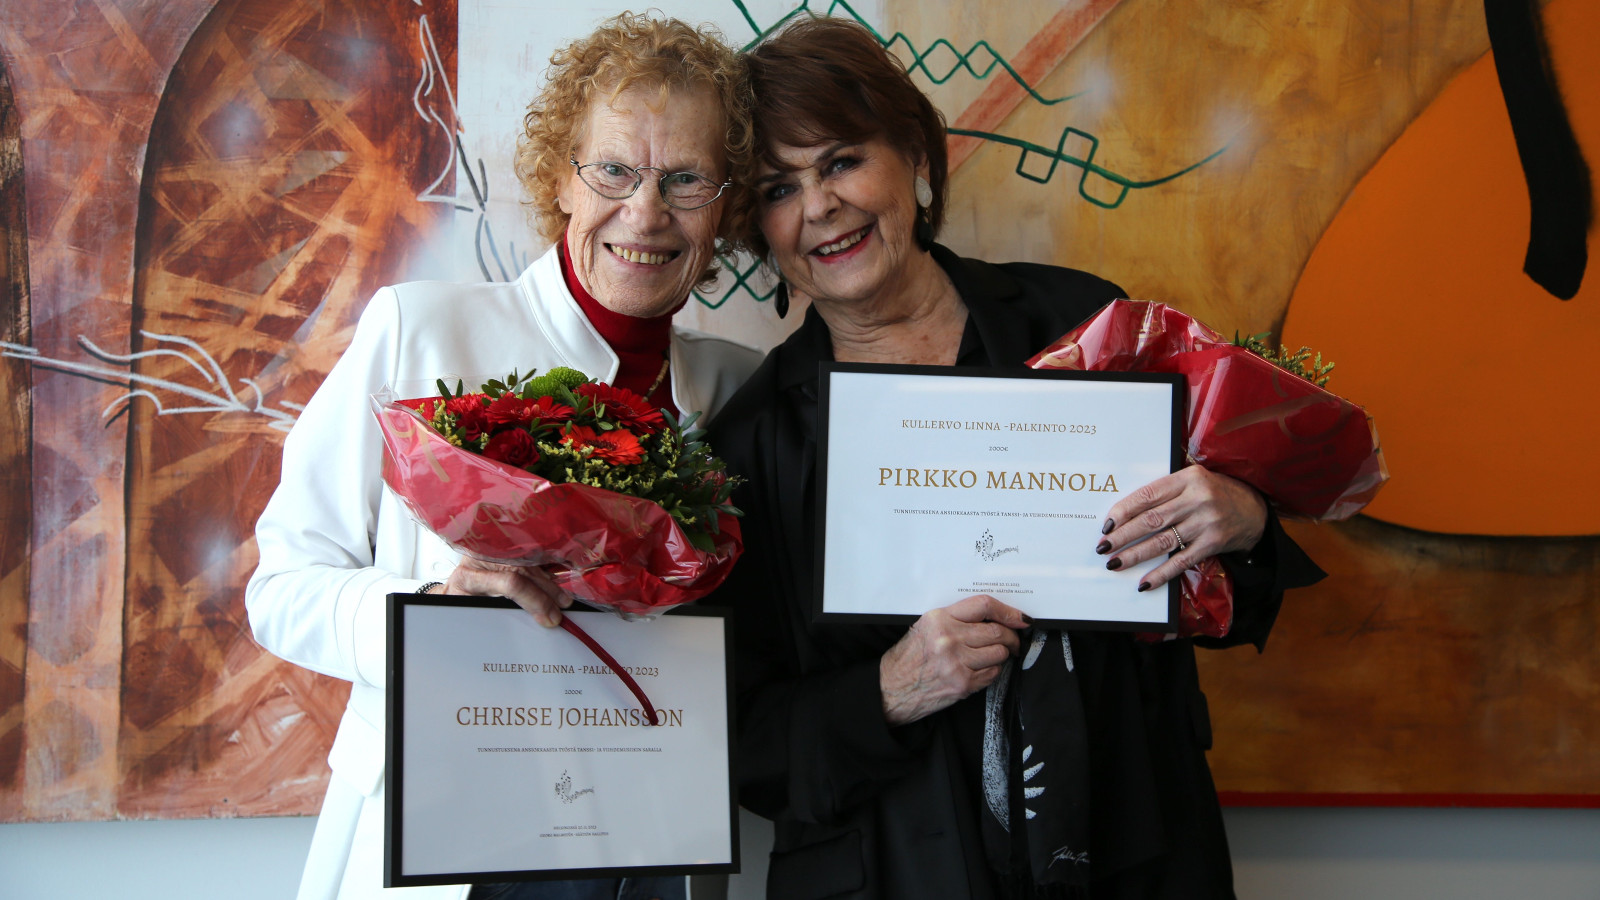 Kuvassa ovat vasemmalla Chrisse Johansson ja oikealla Pirkko Mannola palkintokunniakirjataulut ja kukat kädessään. Johanssonilla on valkoinen jakku ja Mannolalla tumman lila jakku päällään. 